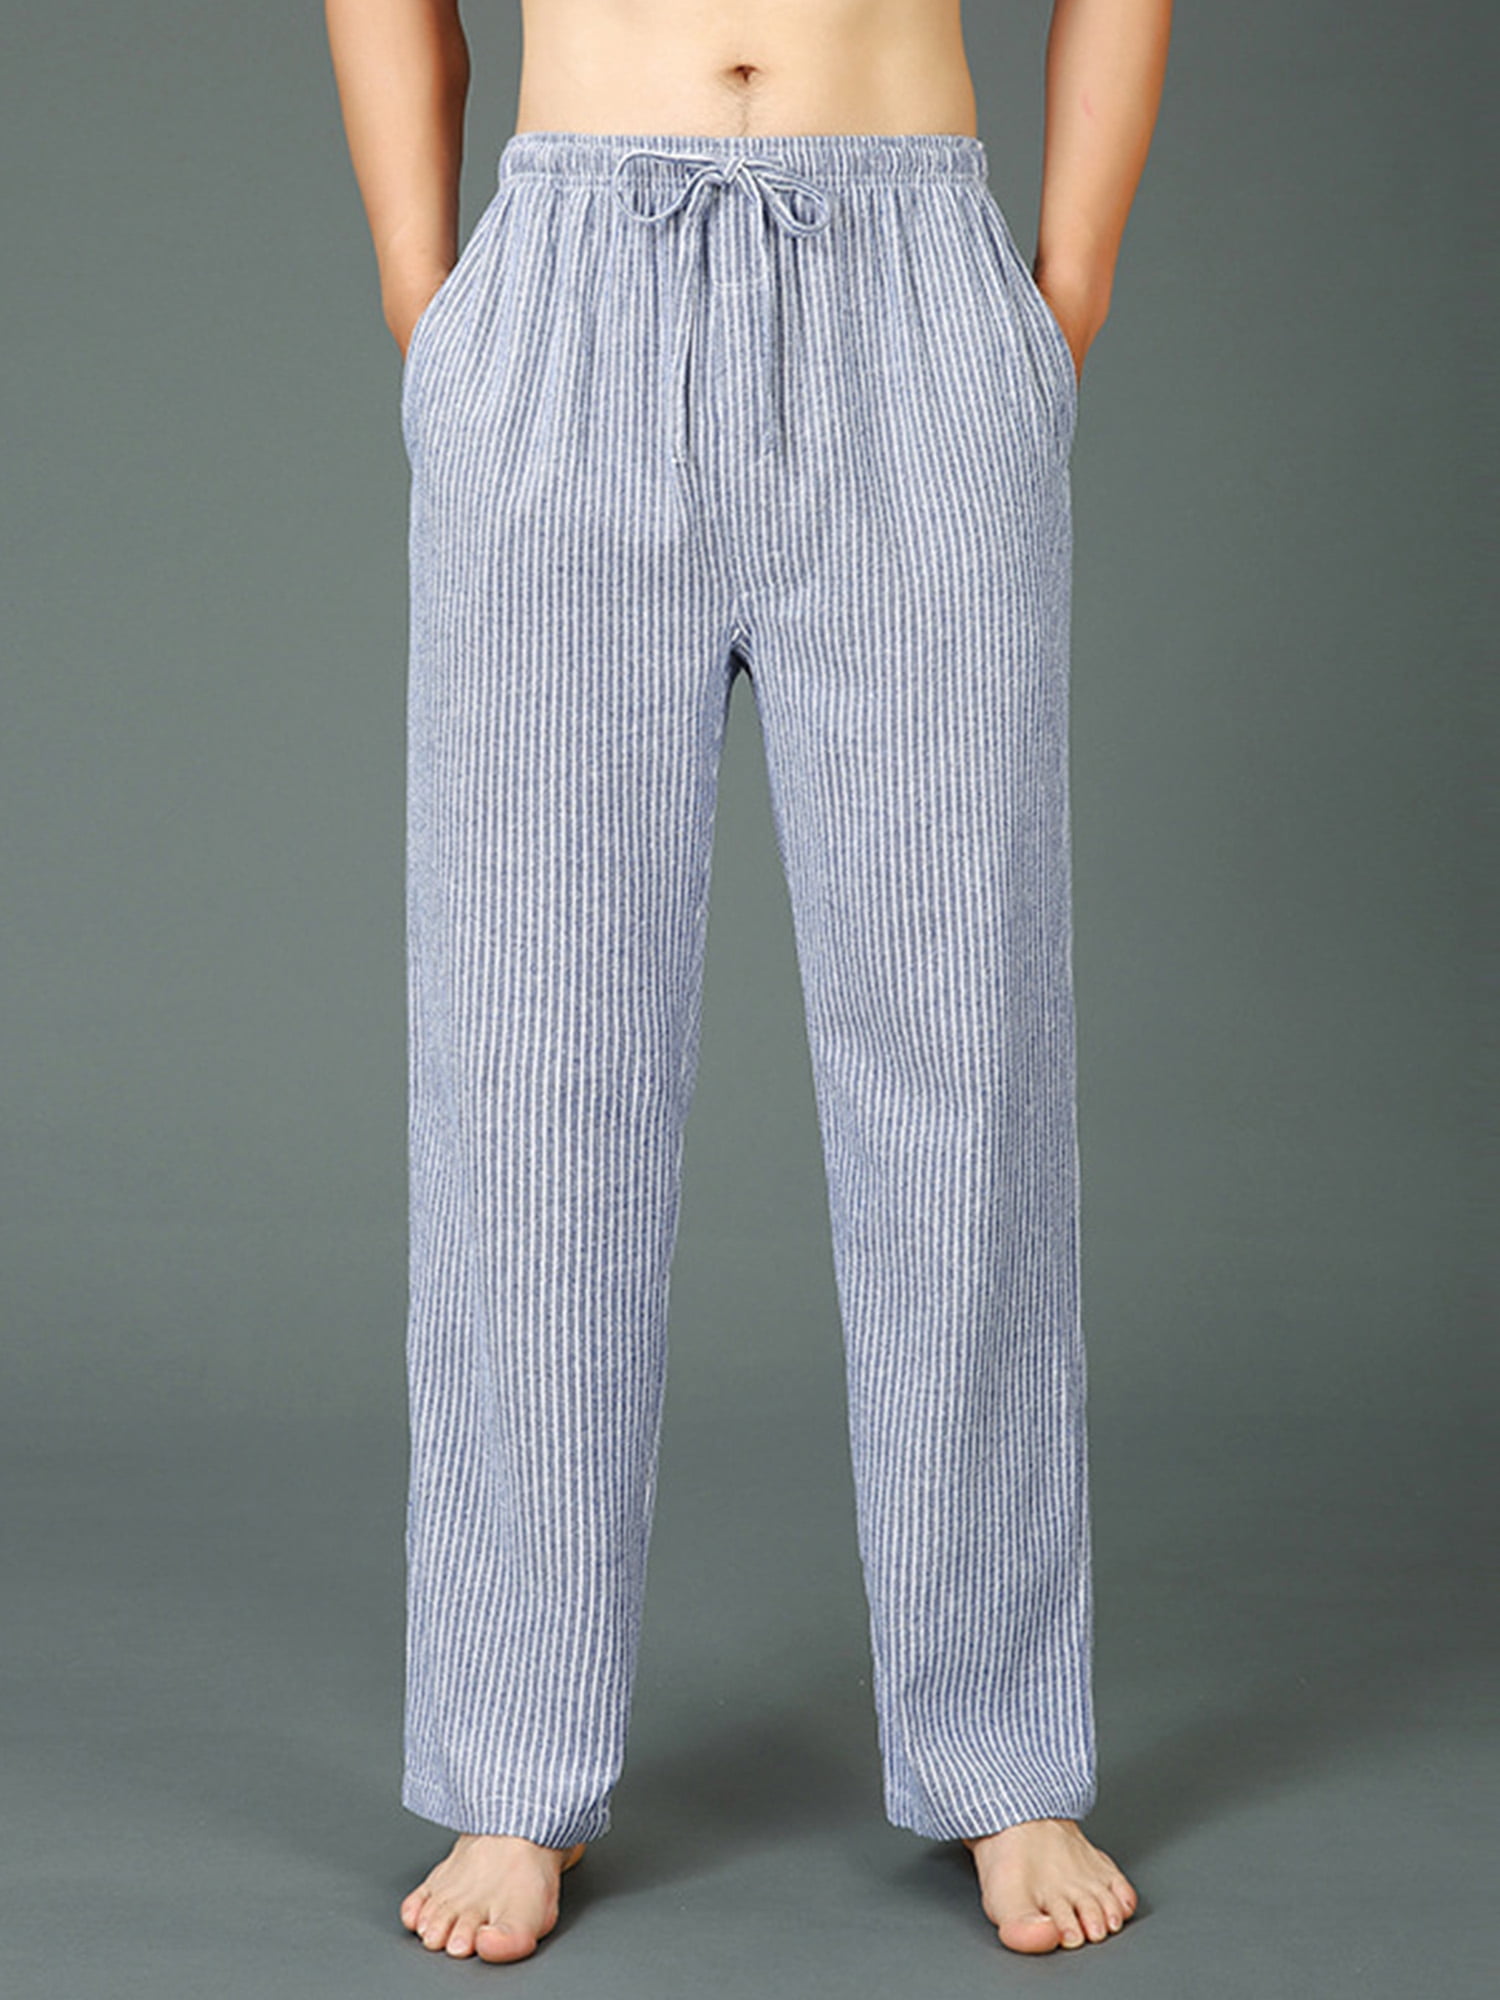 Men Soft pyjamas pants bottoms Elastics Waist trousers Lounge Wear Nightwear Pjs